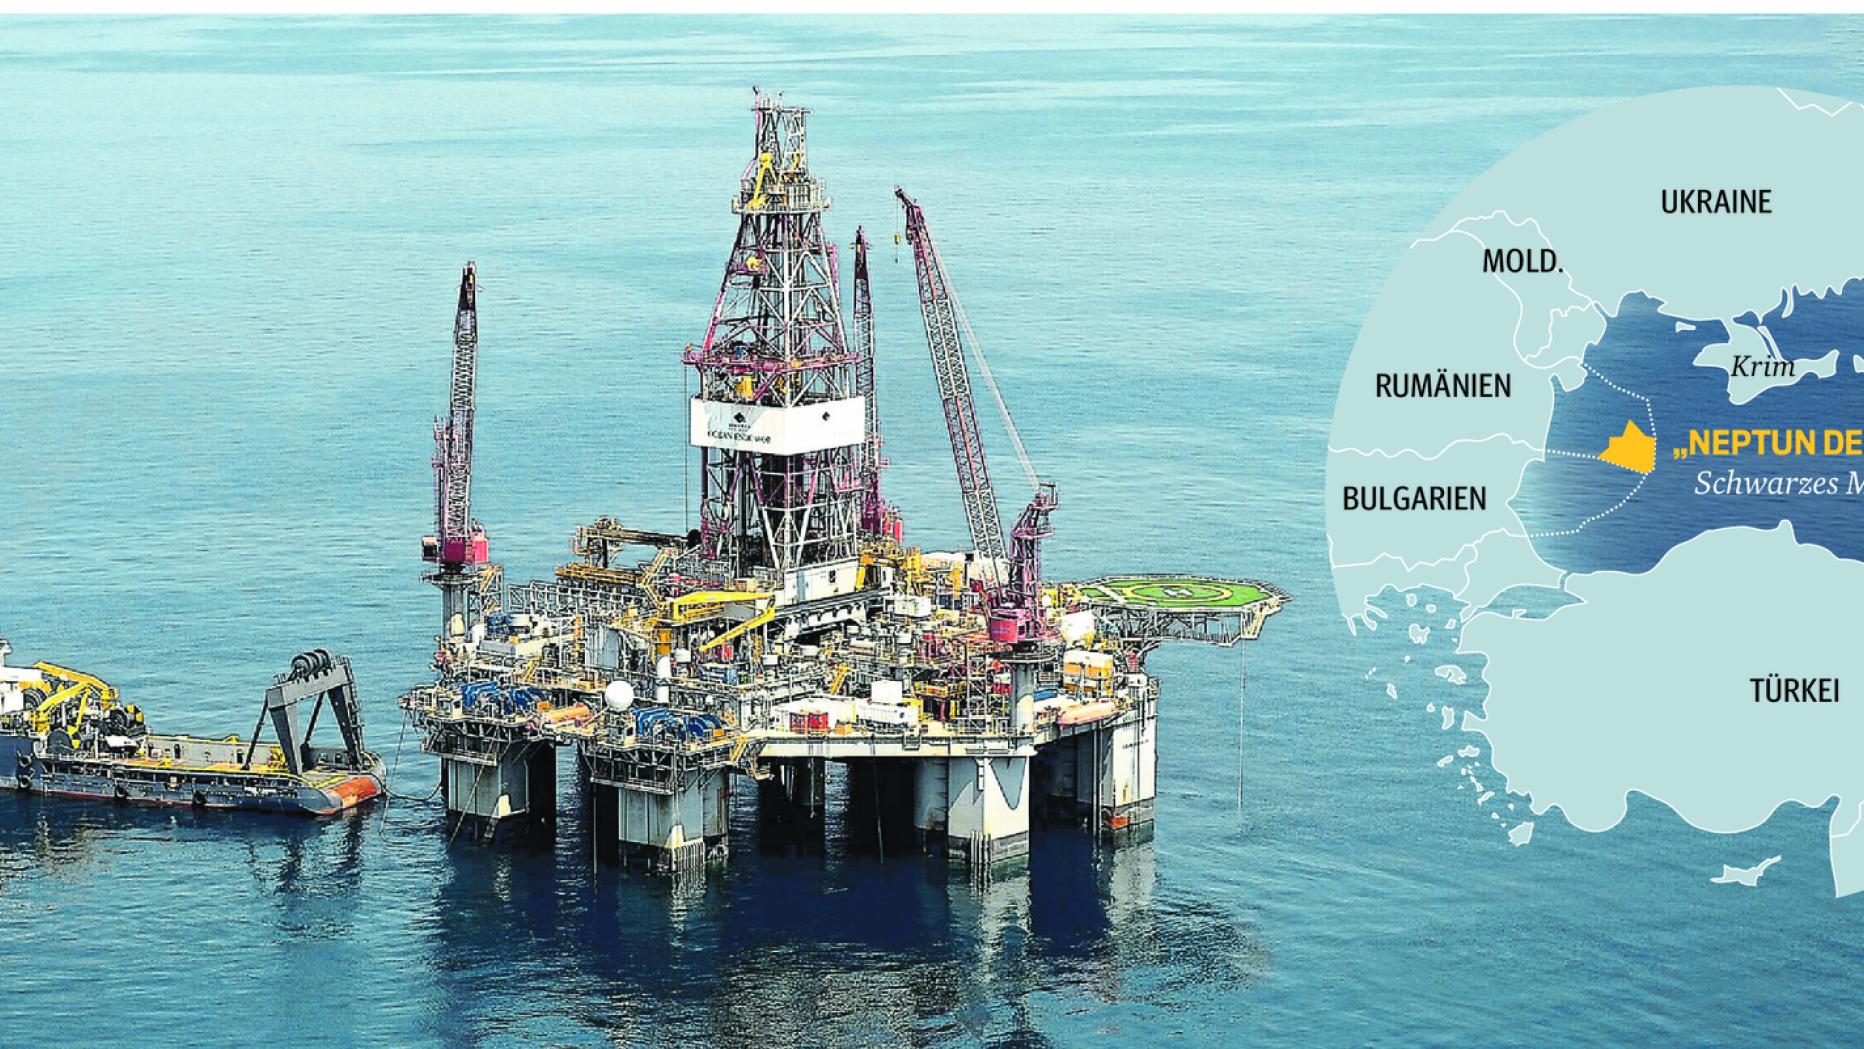 KURIER: Conducerea OMV nu se grăbește să scoată gazul din Marea Neagră. Mai așteaptă clarificări de la guvernul de la București